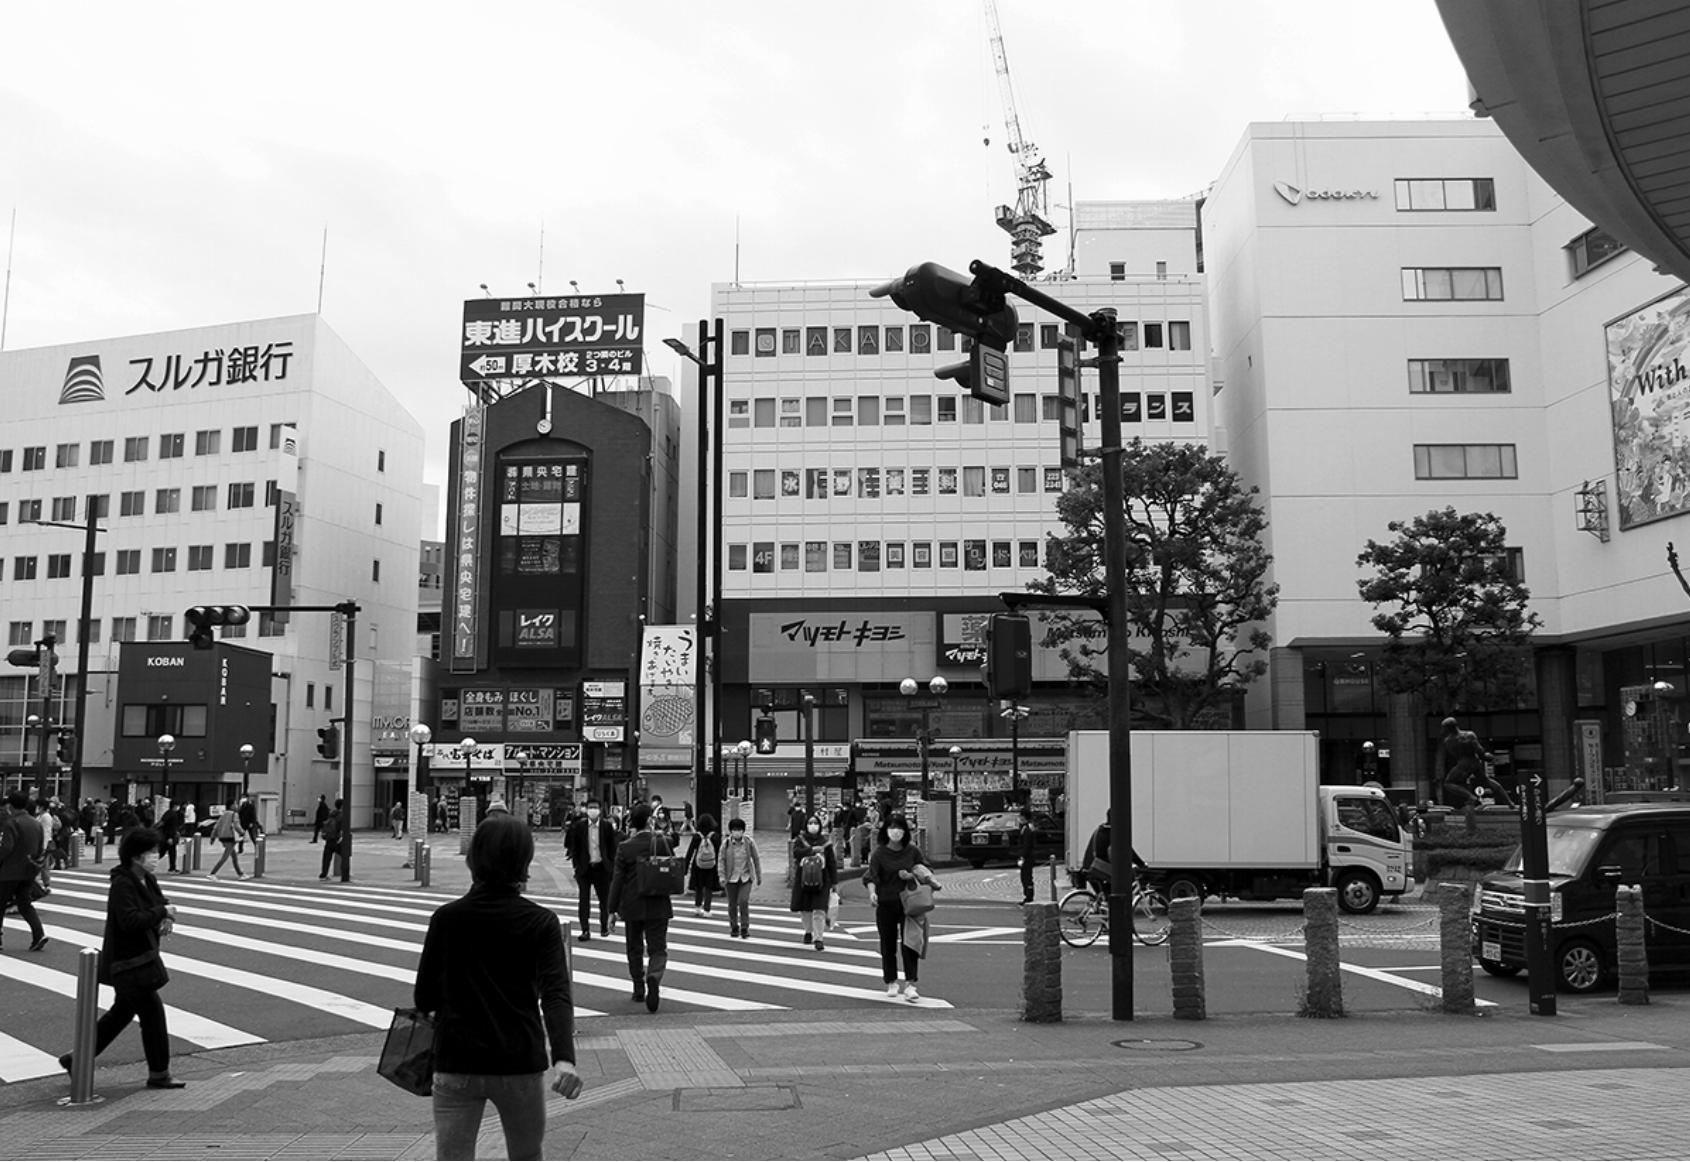 今年、「コロナ禍での借りて住みたい街ランキング」で１位を獲得した小田急小田原線本厚木駅（神奈川県）。北口駅前広場では住人や通勤客の往来が目立った